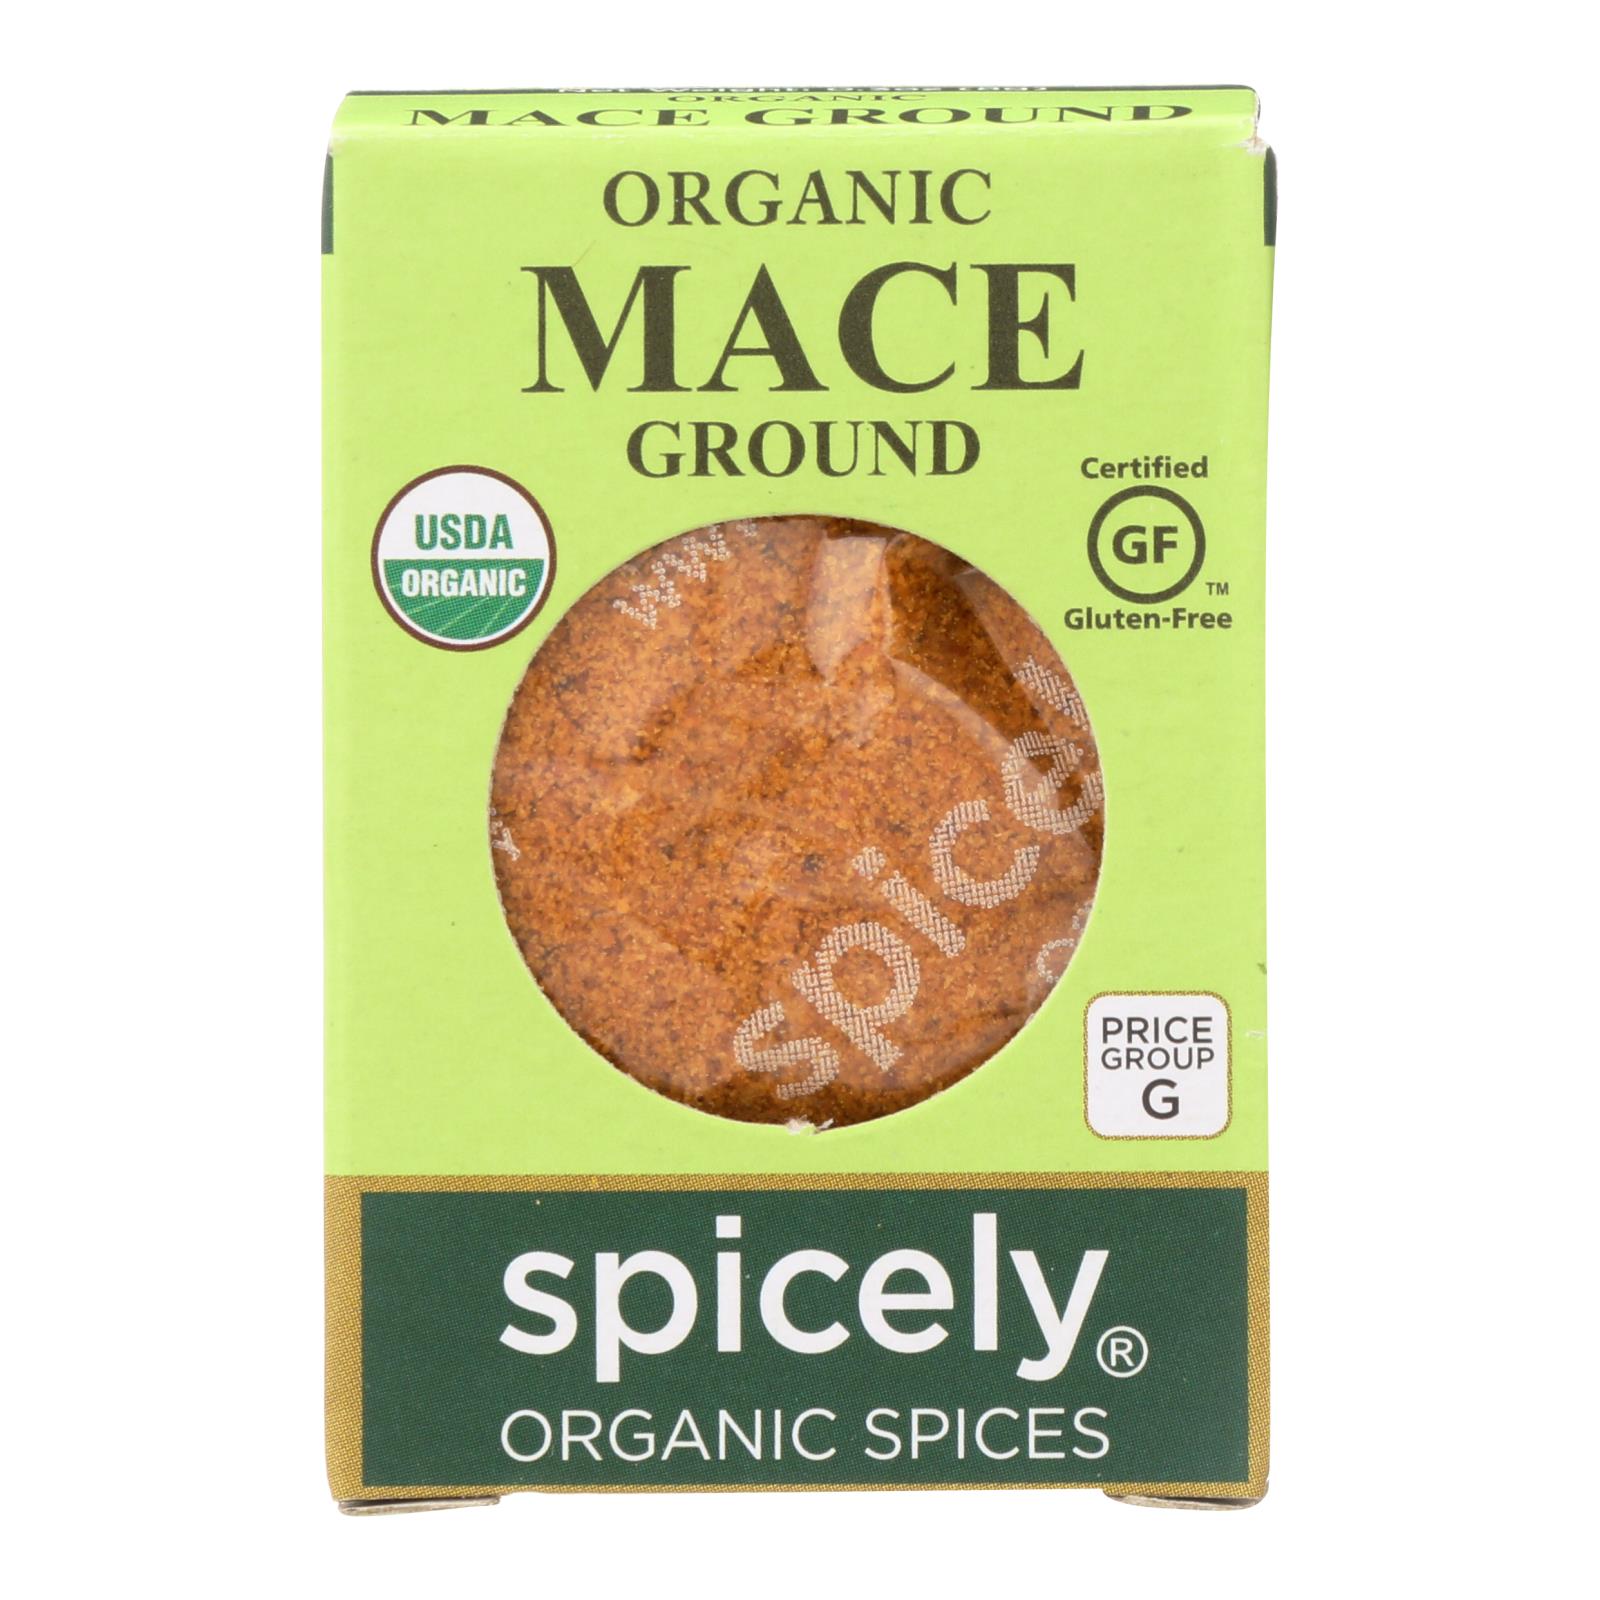 Spicely Organics - Organic Mace - Ground - 6개 묶음상품 - 0.3 oz.